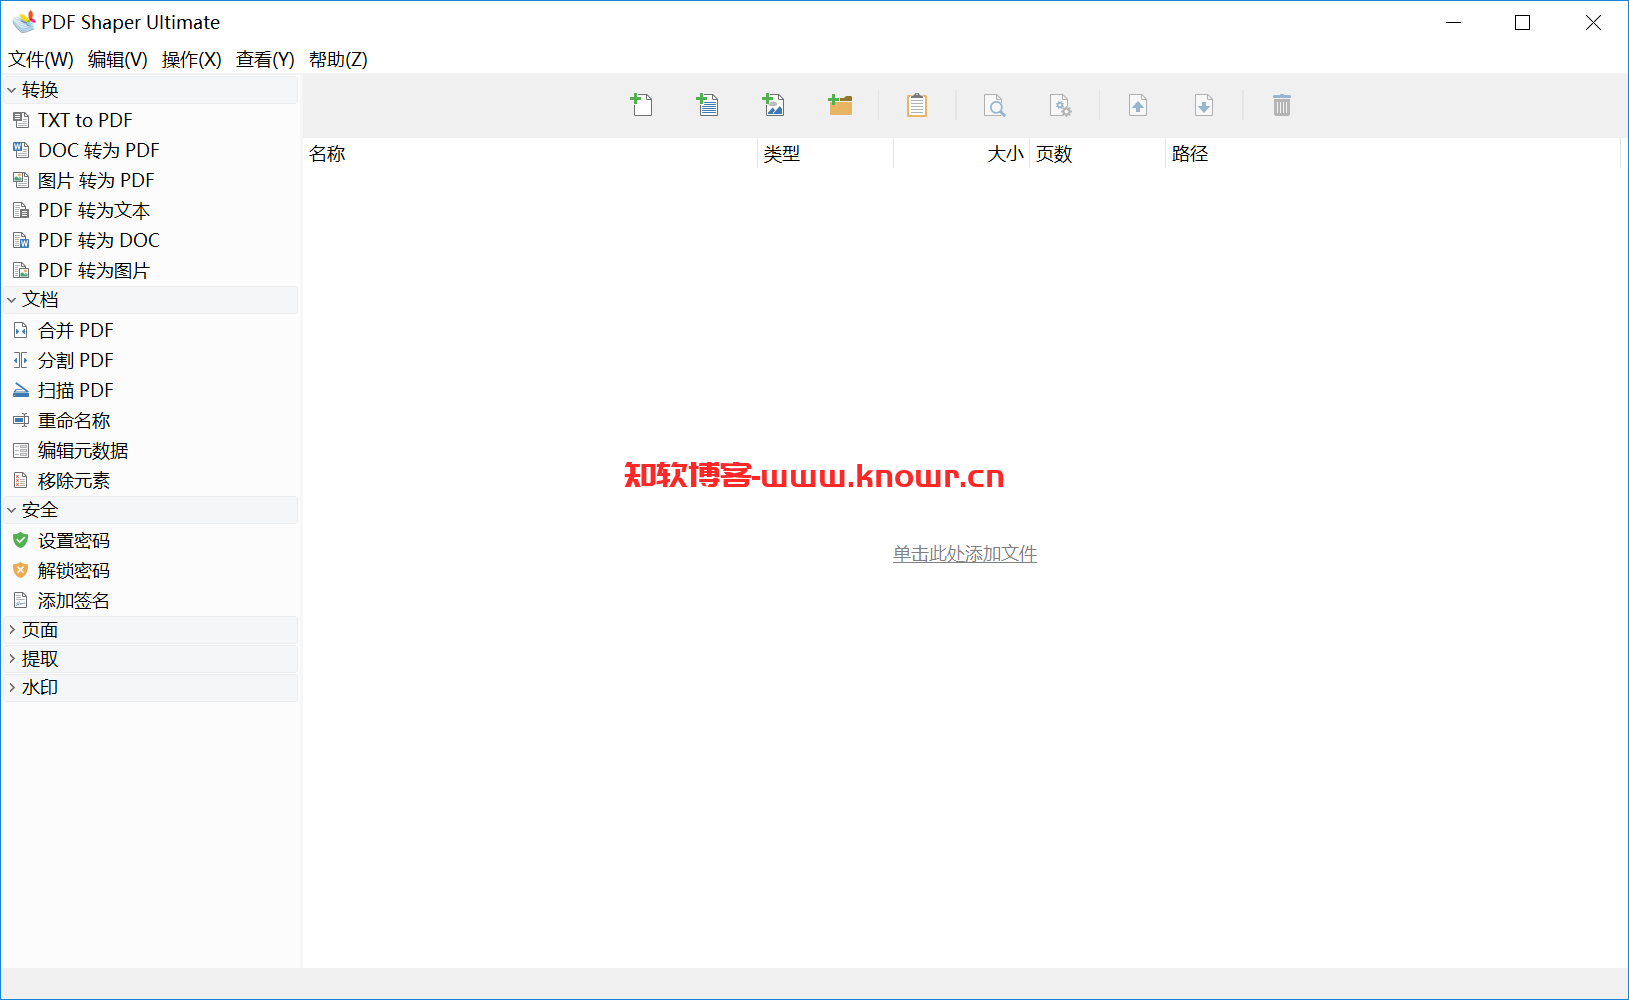 PDF工具箱 PDF Shaper Ultimate v14.1.0 单文件破解版